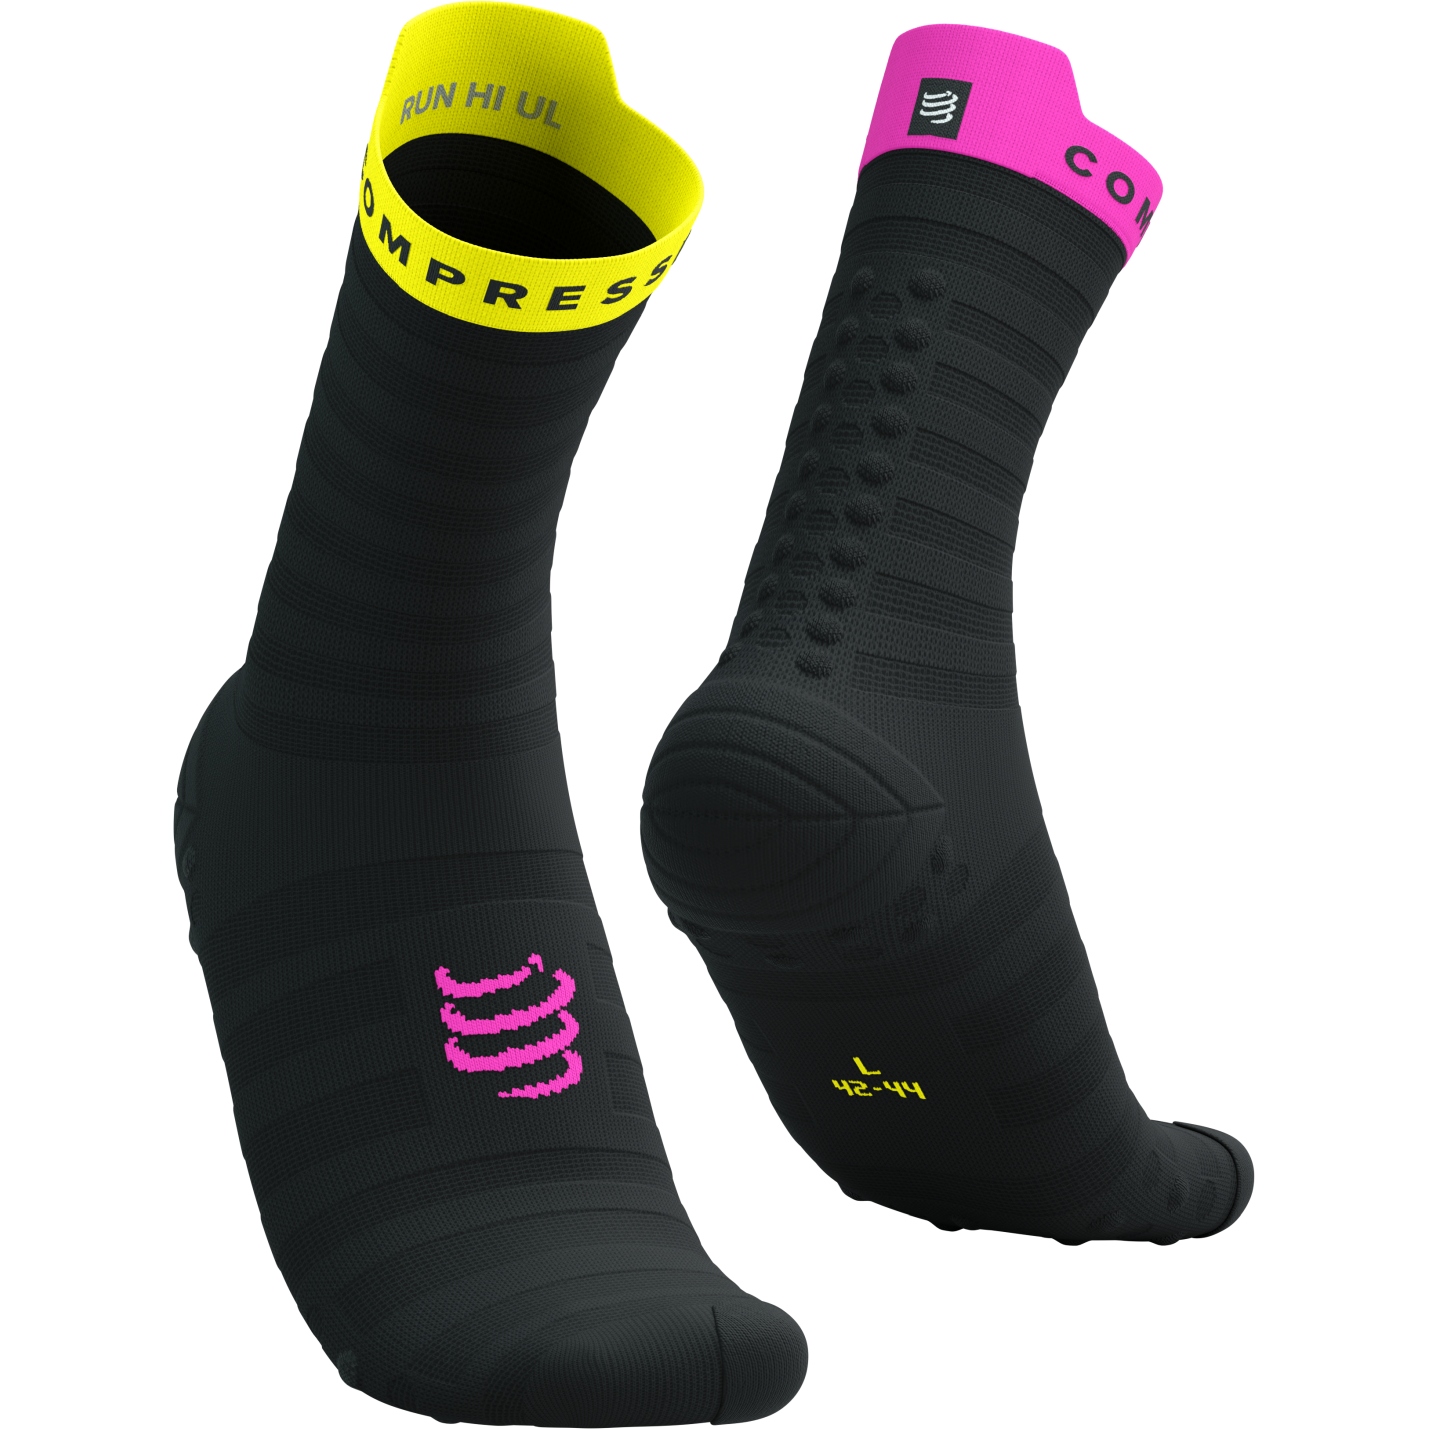 Immagine prodotto da Compressport Calze a Compressione - Pro Racing v4.0 Ultralight Run High - black/safety yellow/neon pink